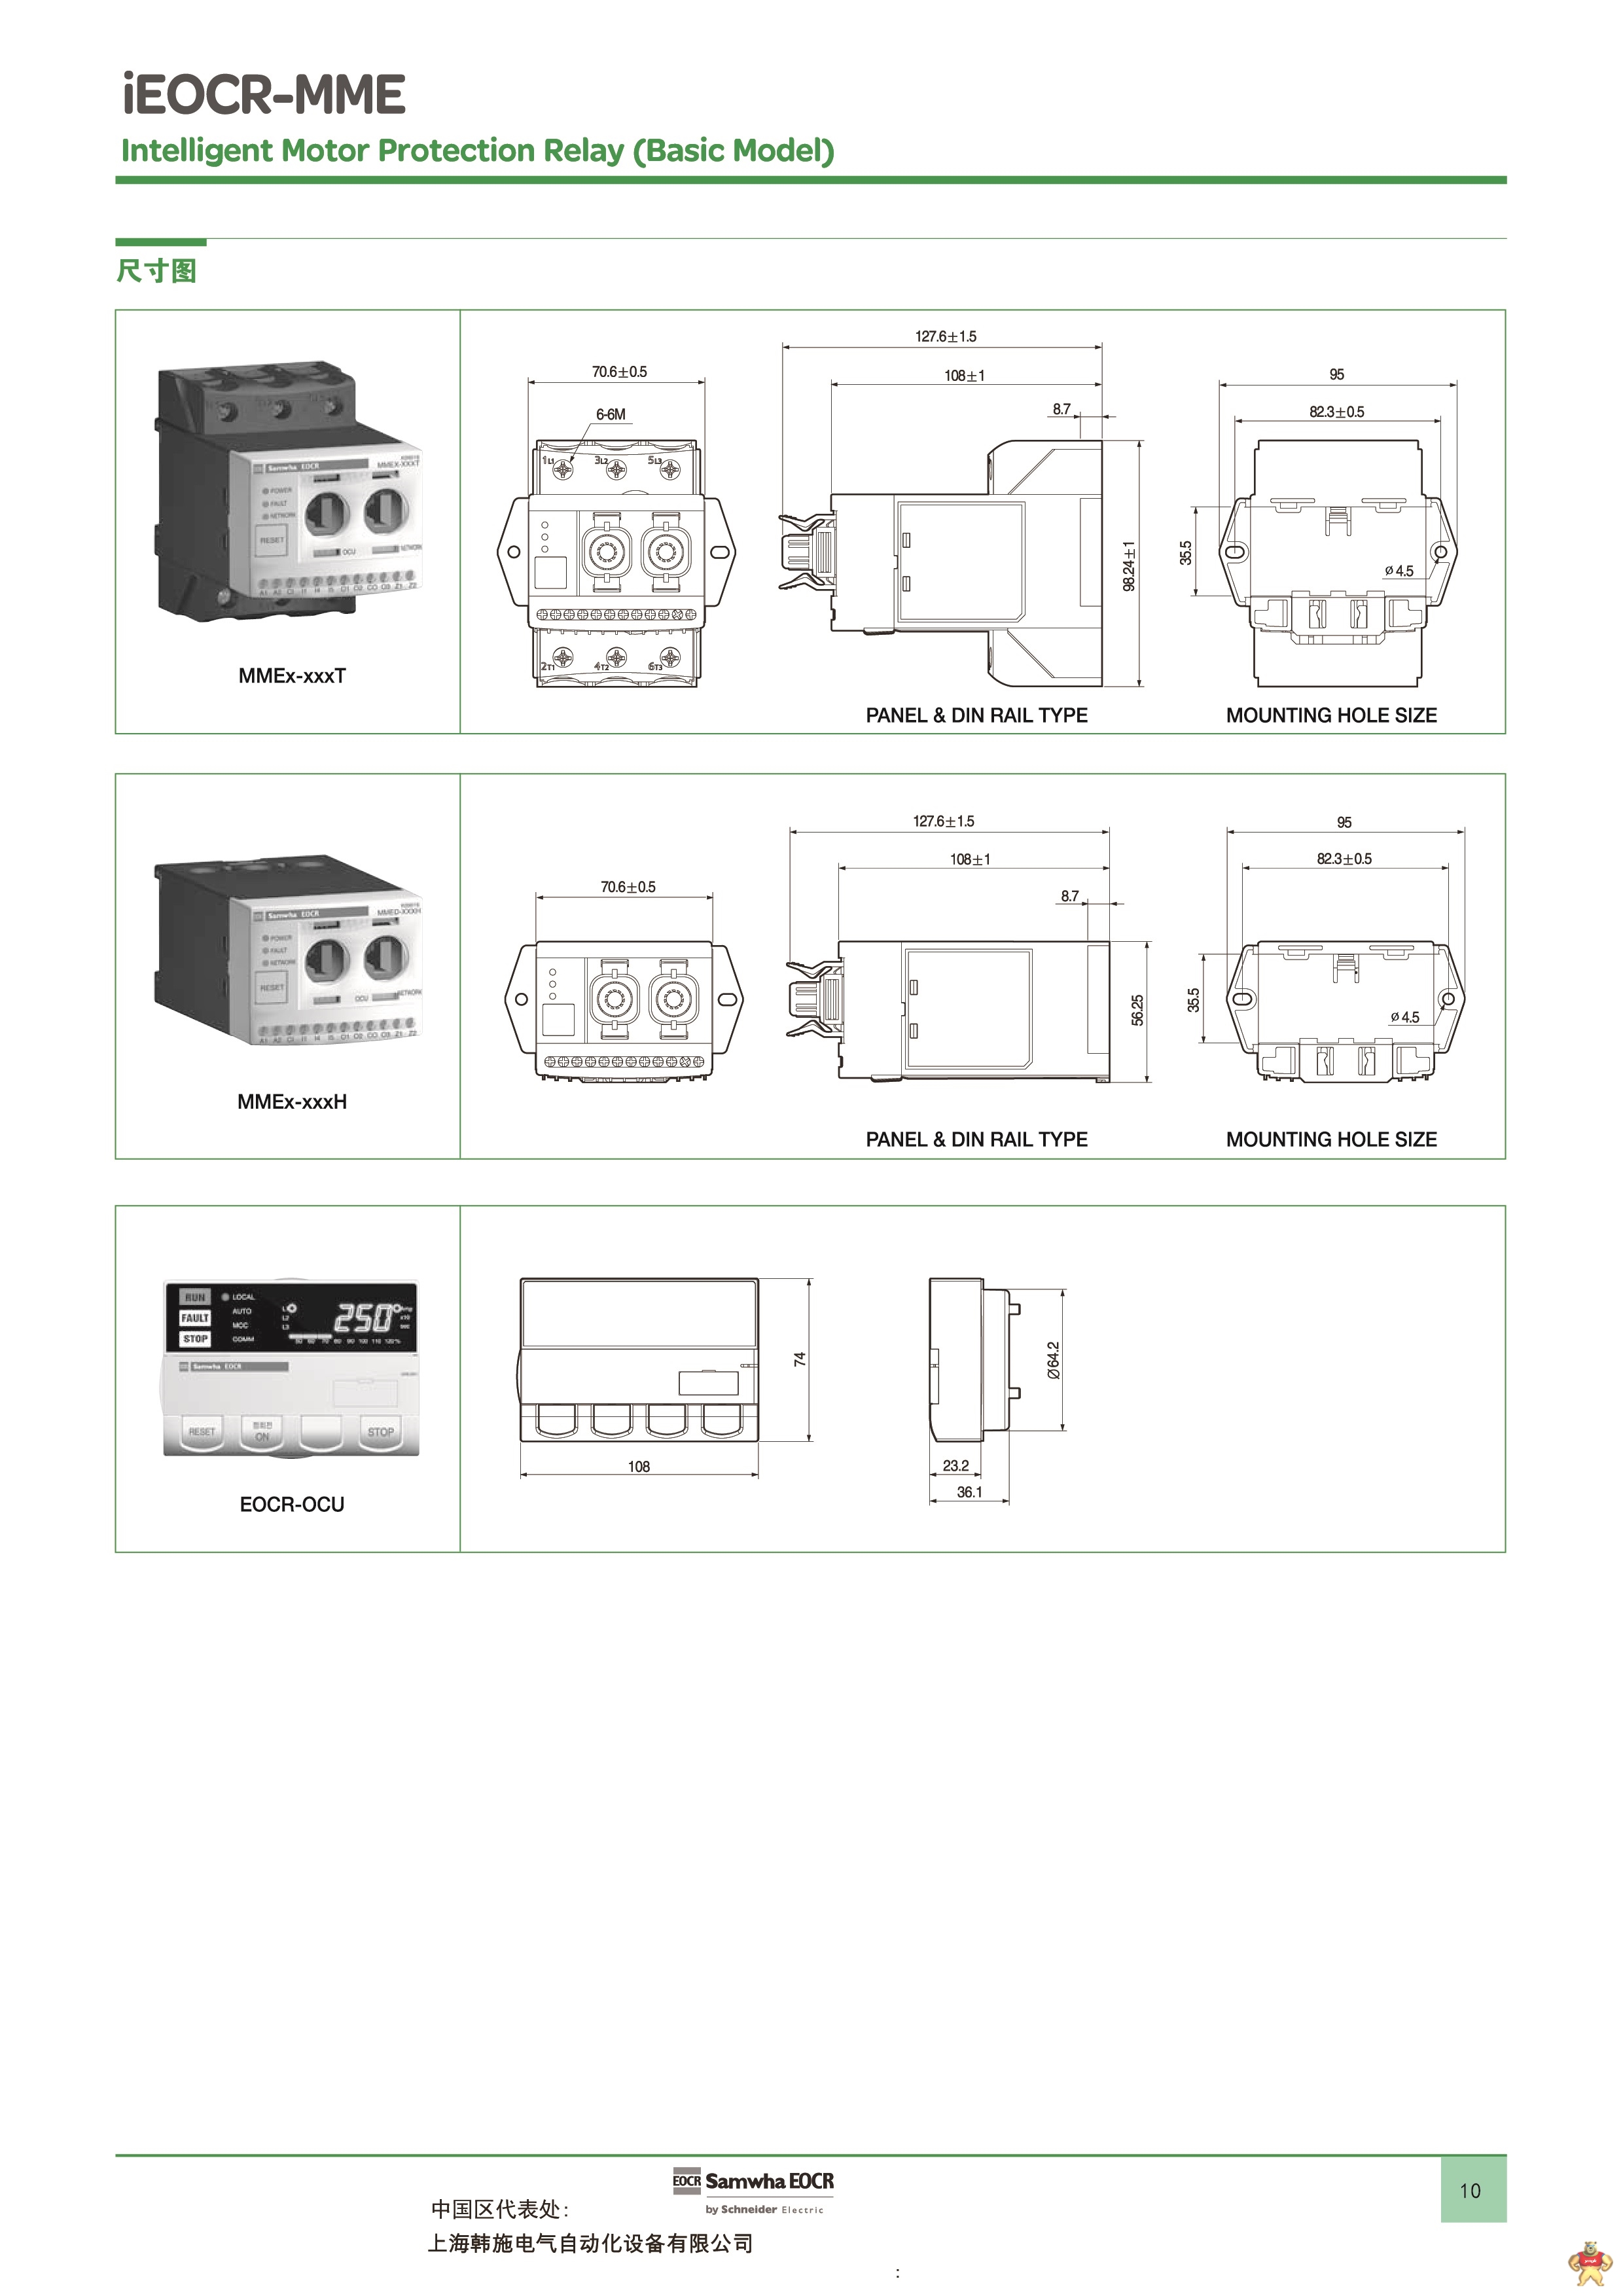 施耐德EOCR（原韩国三和）EOCR-MME电子式电动机保护器 施耐德,韩国三和,EOCR,电动机保护器,电动机综合保护器